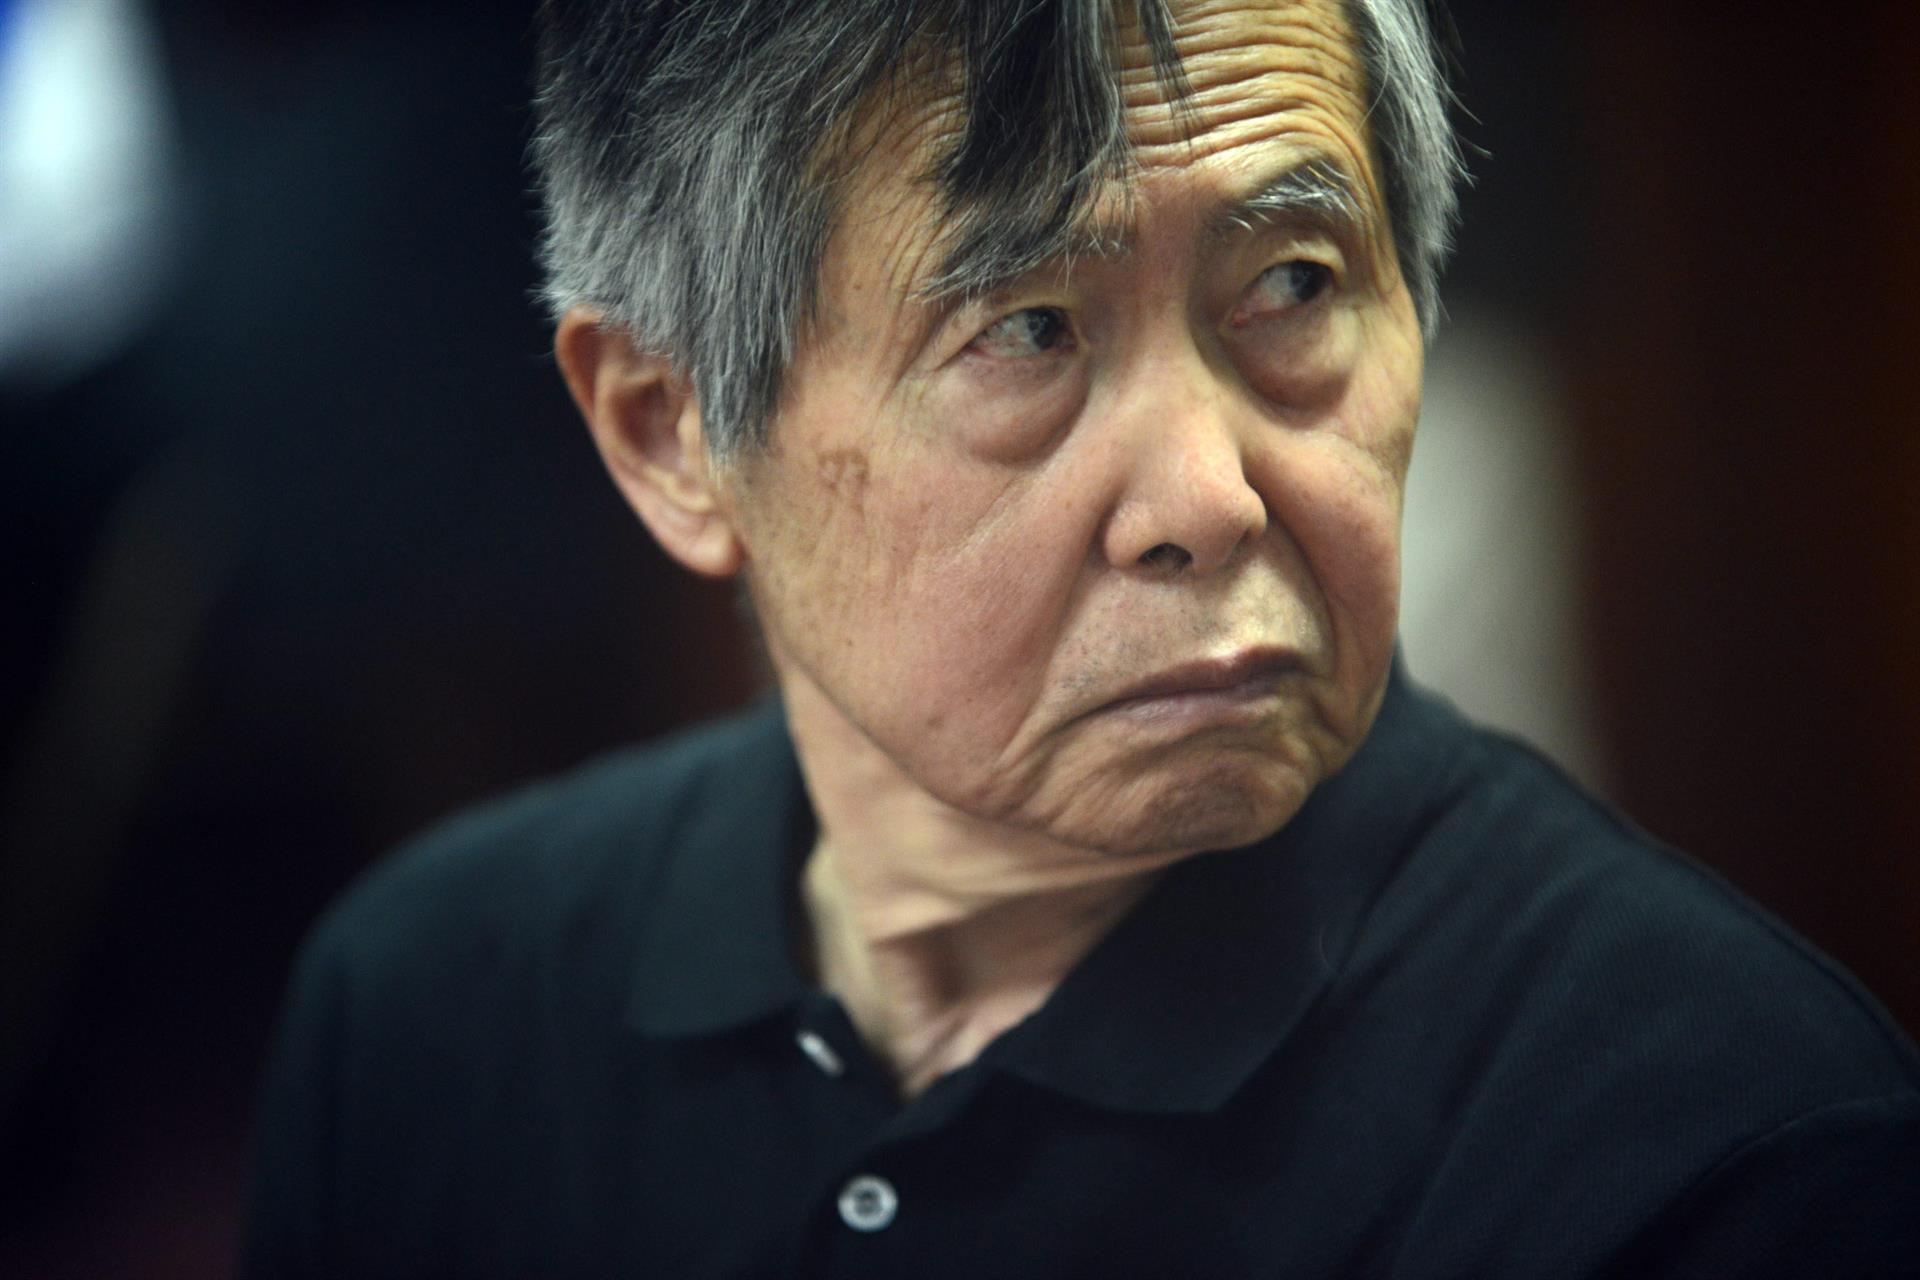 Abren proceso penal contra Alberto Fujimori por presuntas “esterilizaciones forzadas”